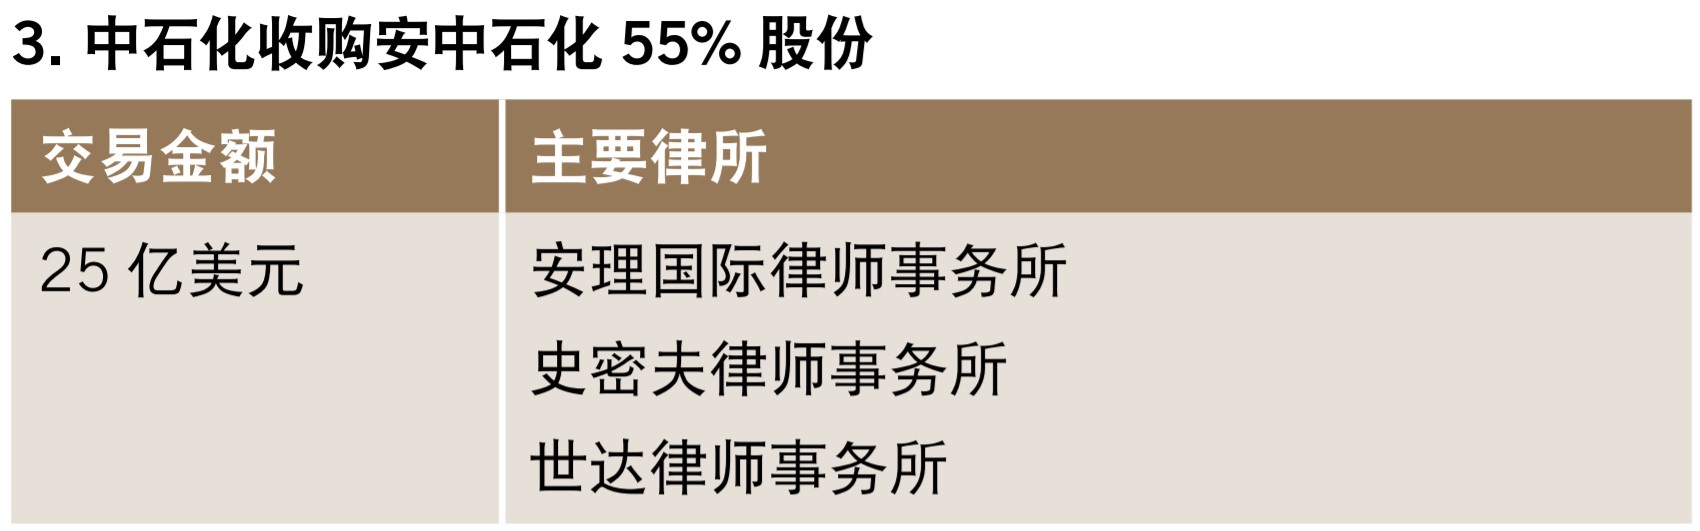 中石化收购安中石化55%股份